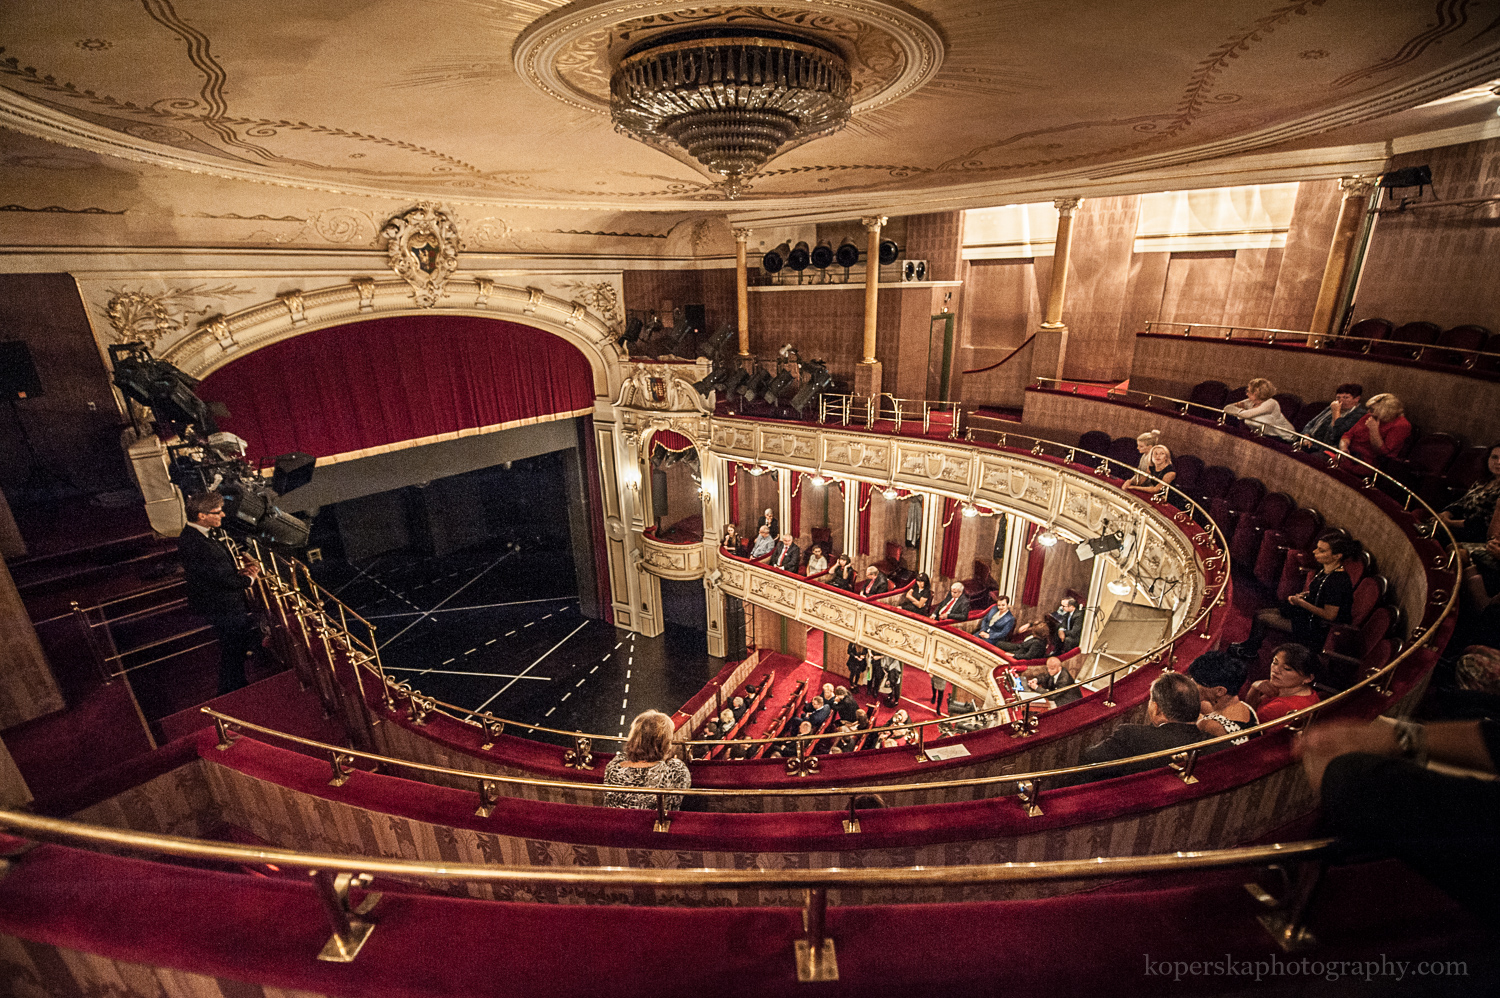 Widownia teatru pokazana z góry, z drugiego balkonu. Zabytkowe wnętrze ze złotymi zdobieniami i bordowymi fotelami. 